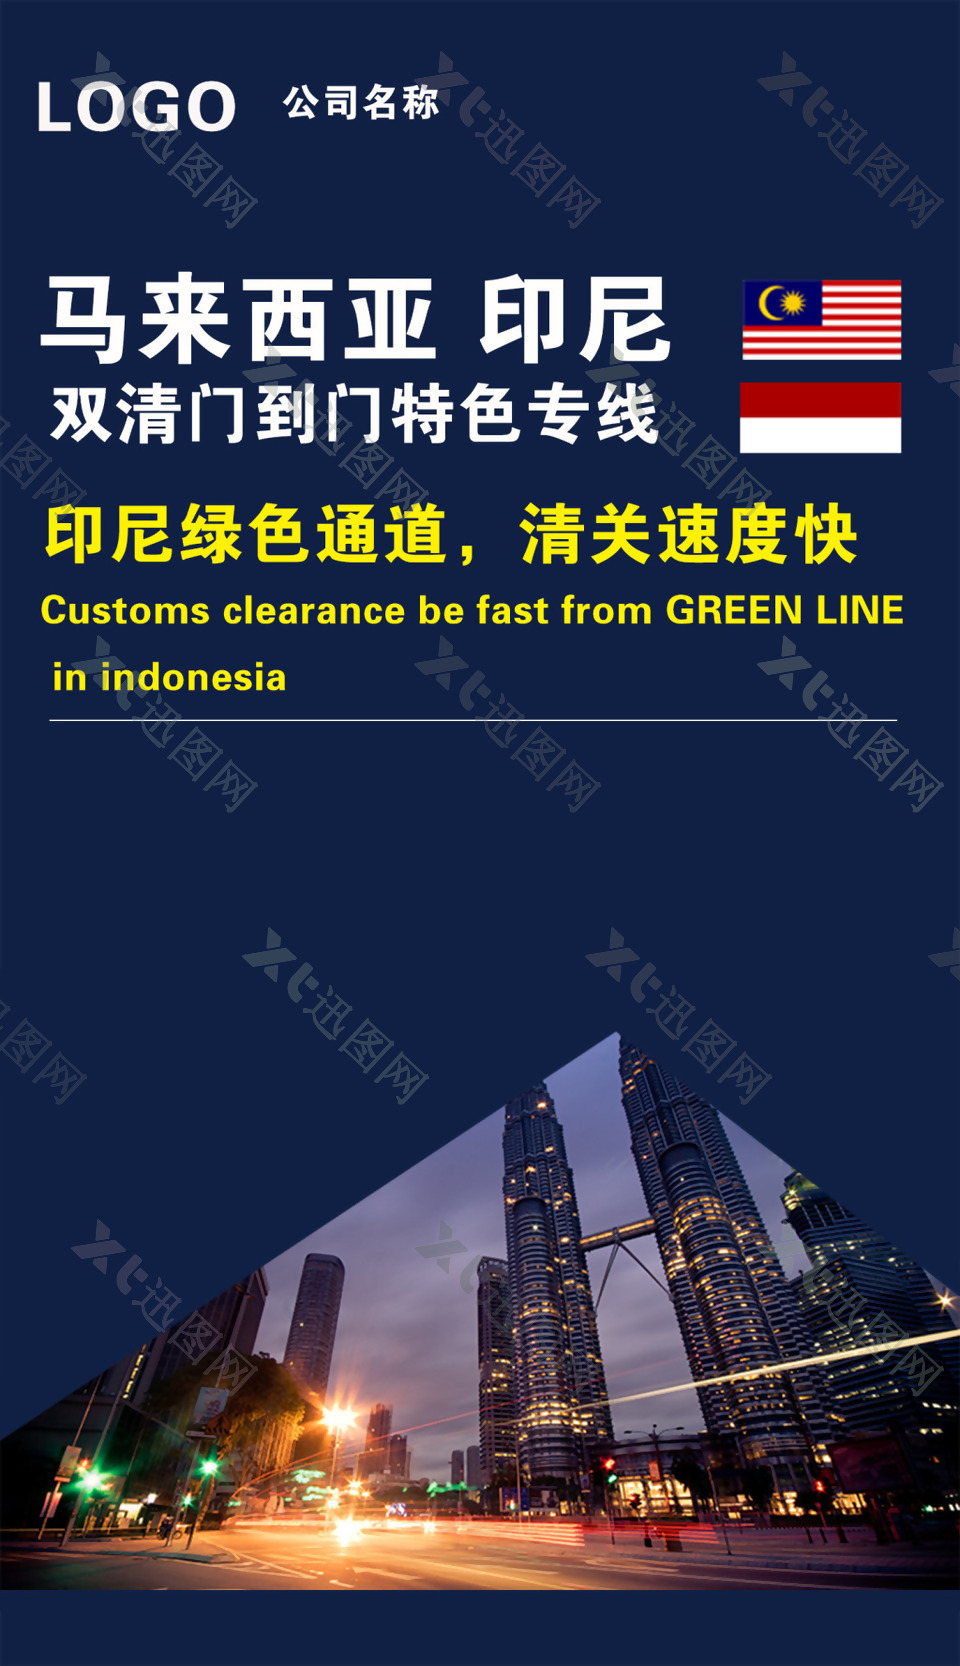 马来西亚印尼货代物流海报